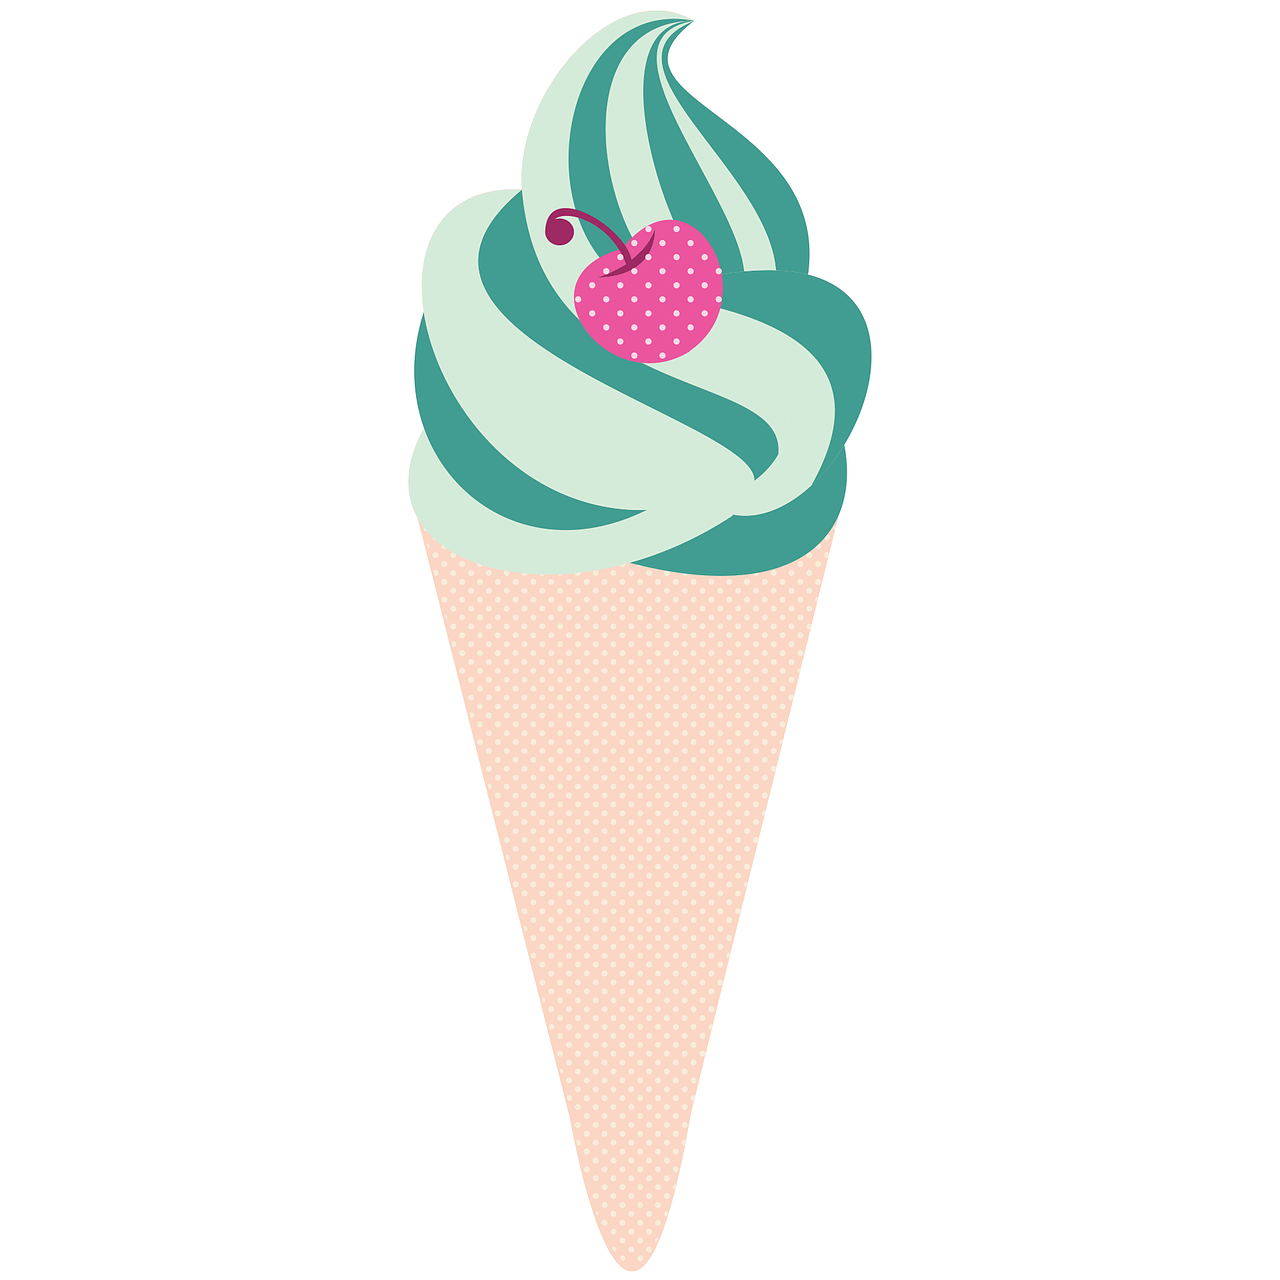 ice-cream cone peach free photo